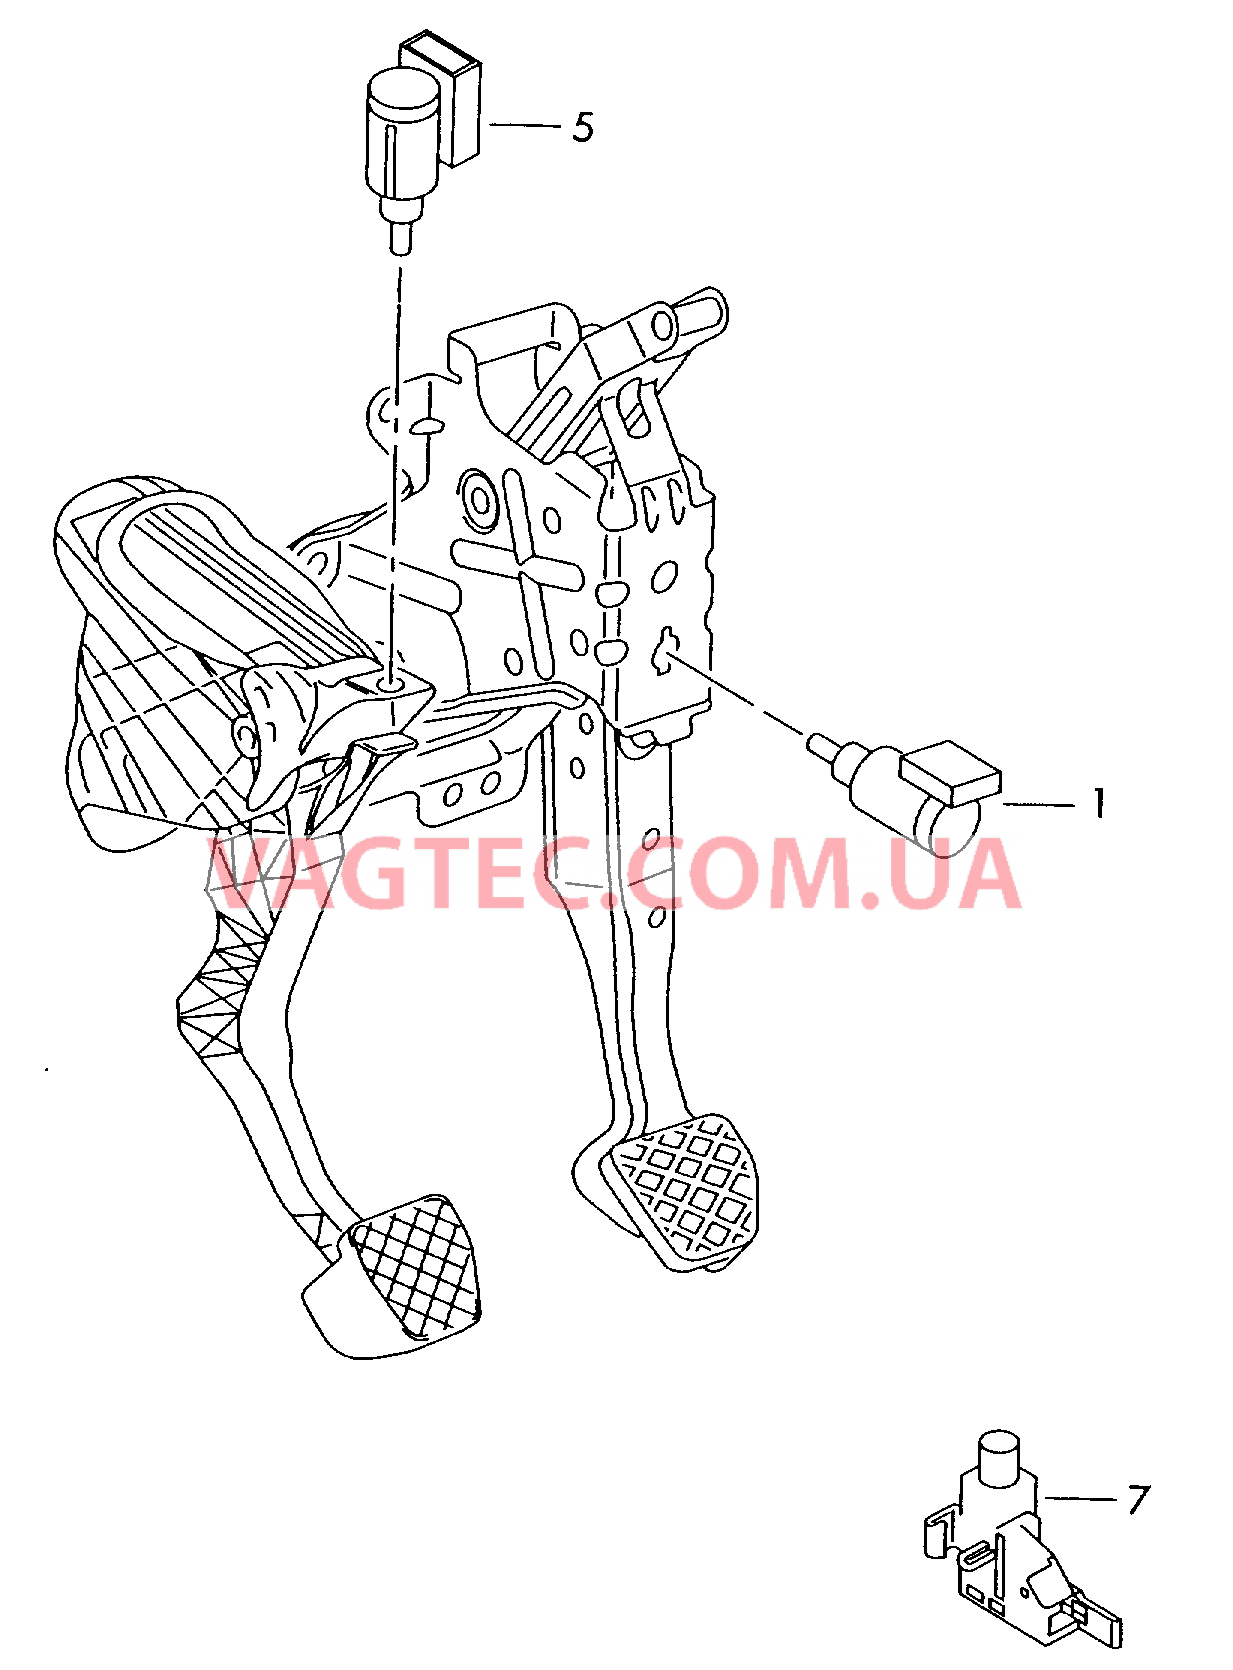 Выключатель стоп-сигнала Выключатель контроля положения ручного тормоза  Датчик Холла Педаль сцепления  для SKODA Octavia 2015